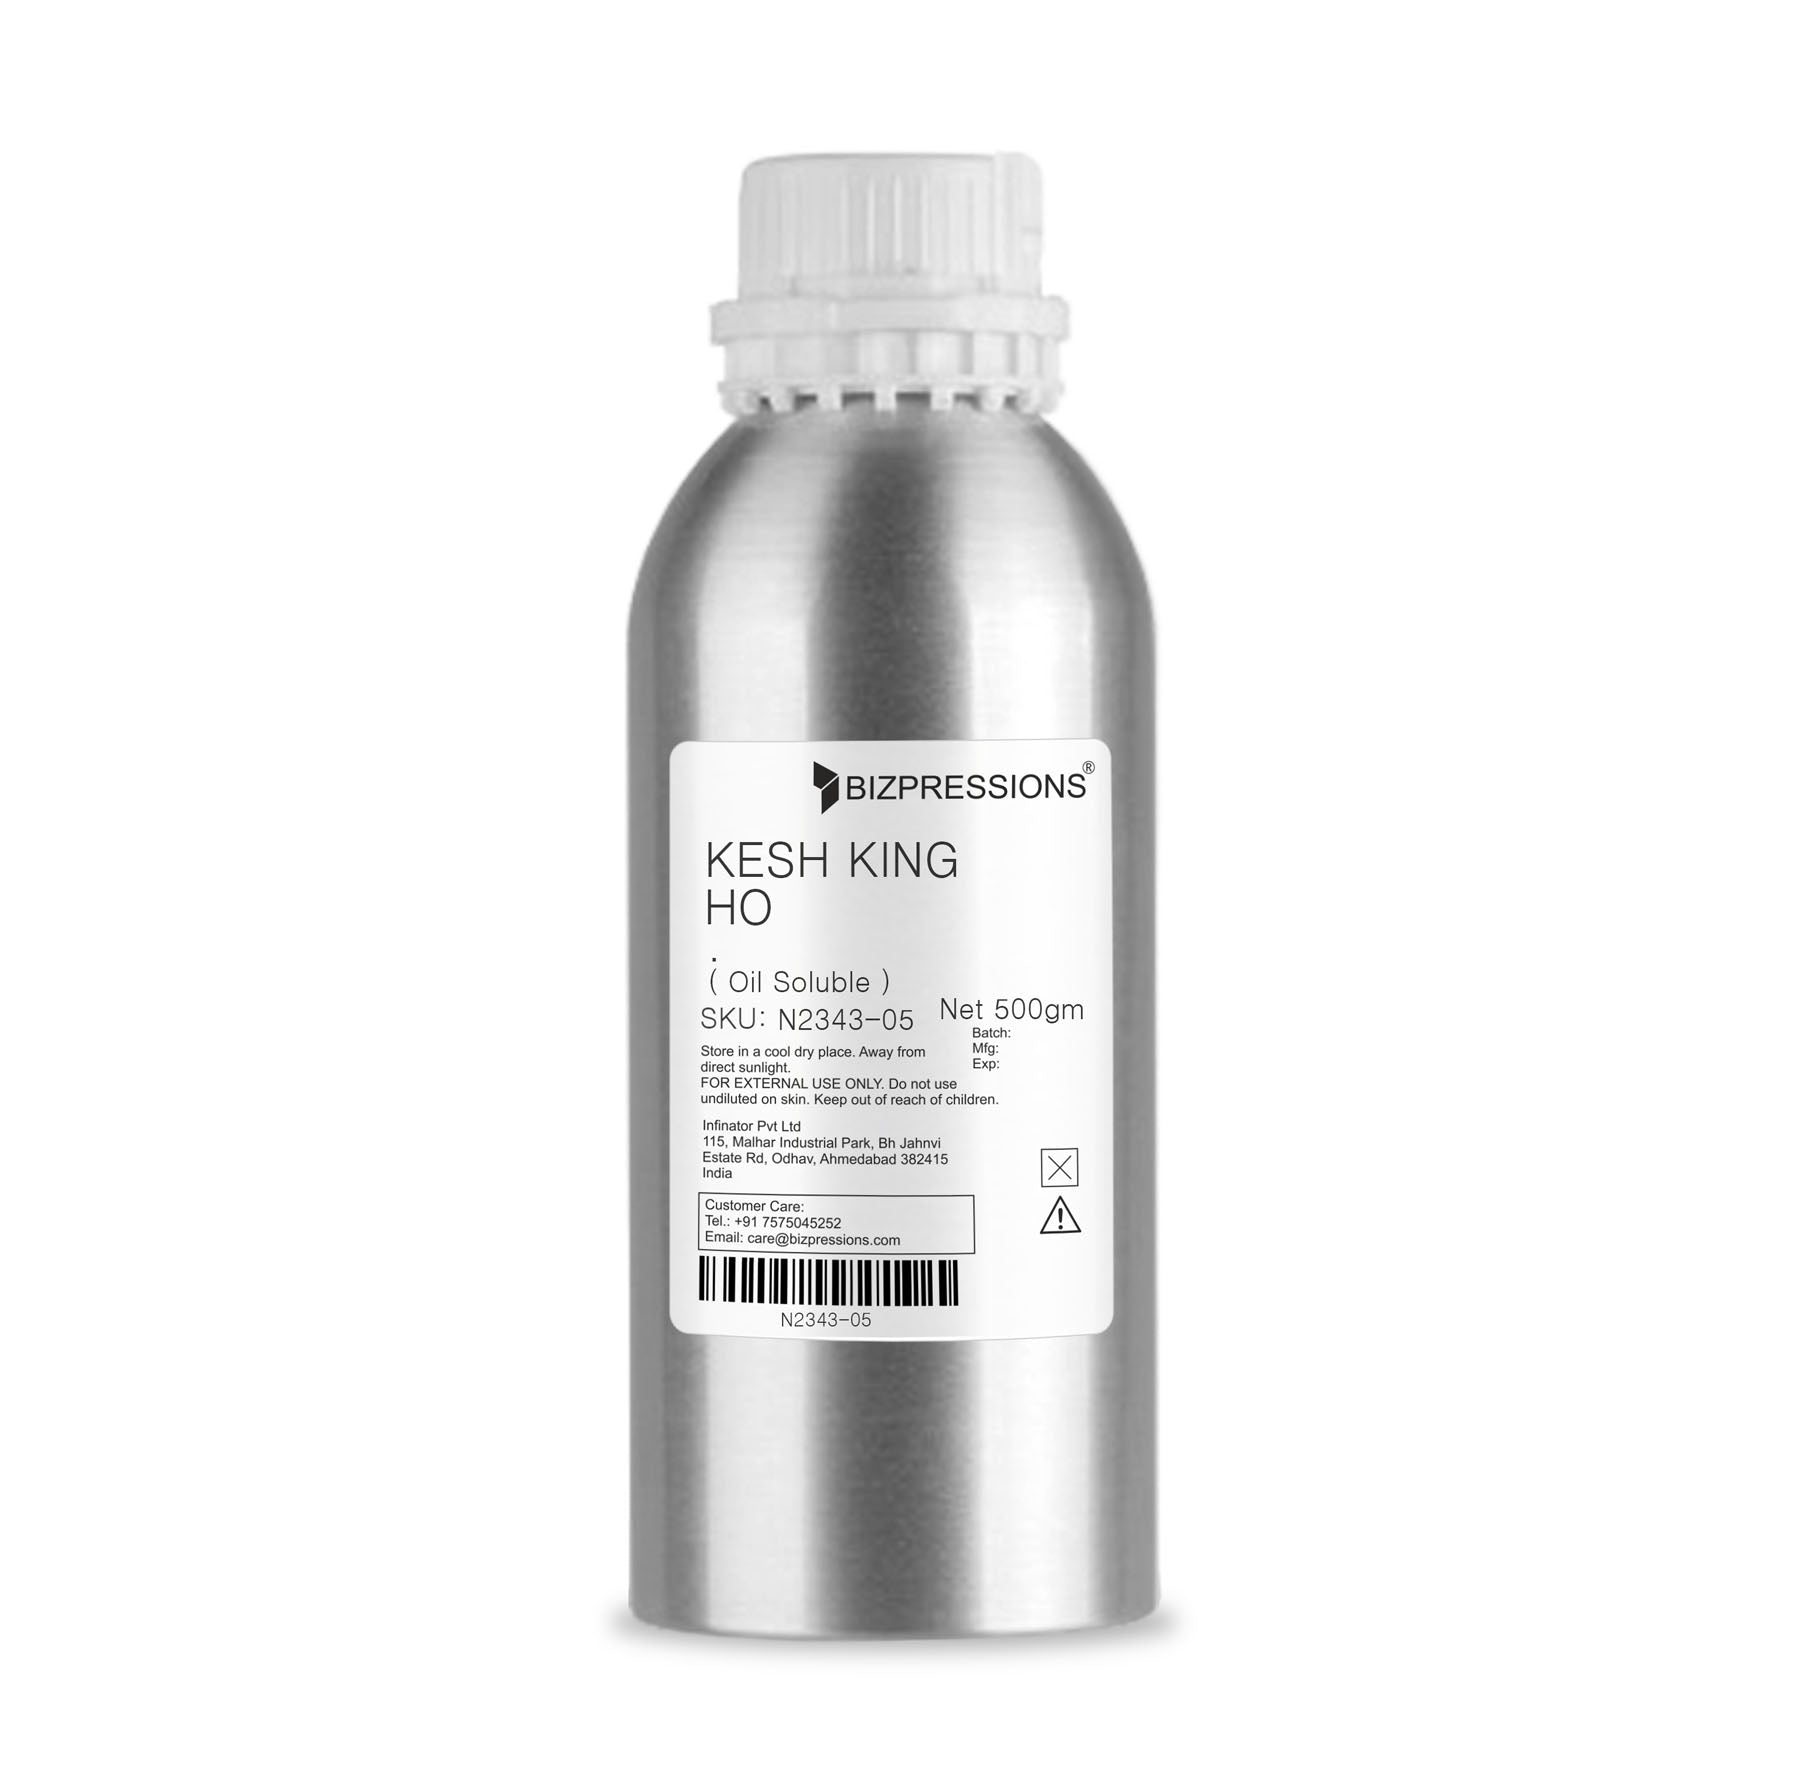 KESH KING HO - Fragrance ( Oil Soluble ) - 500 gm